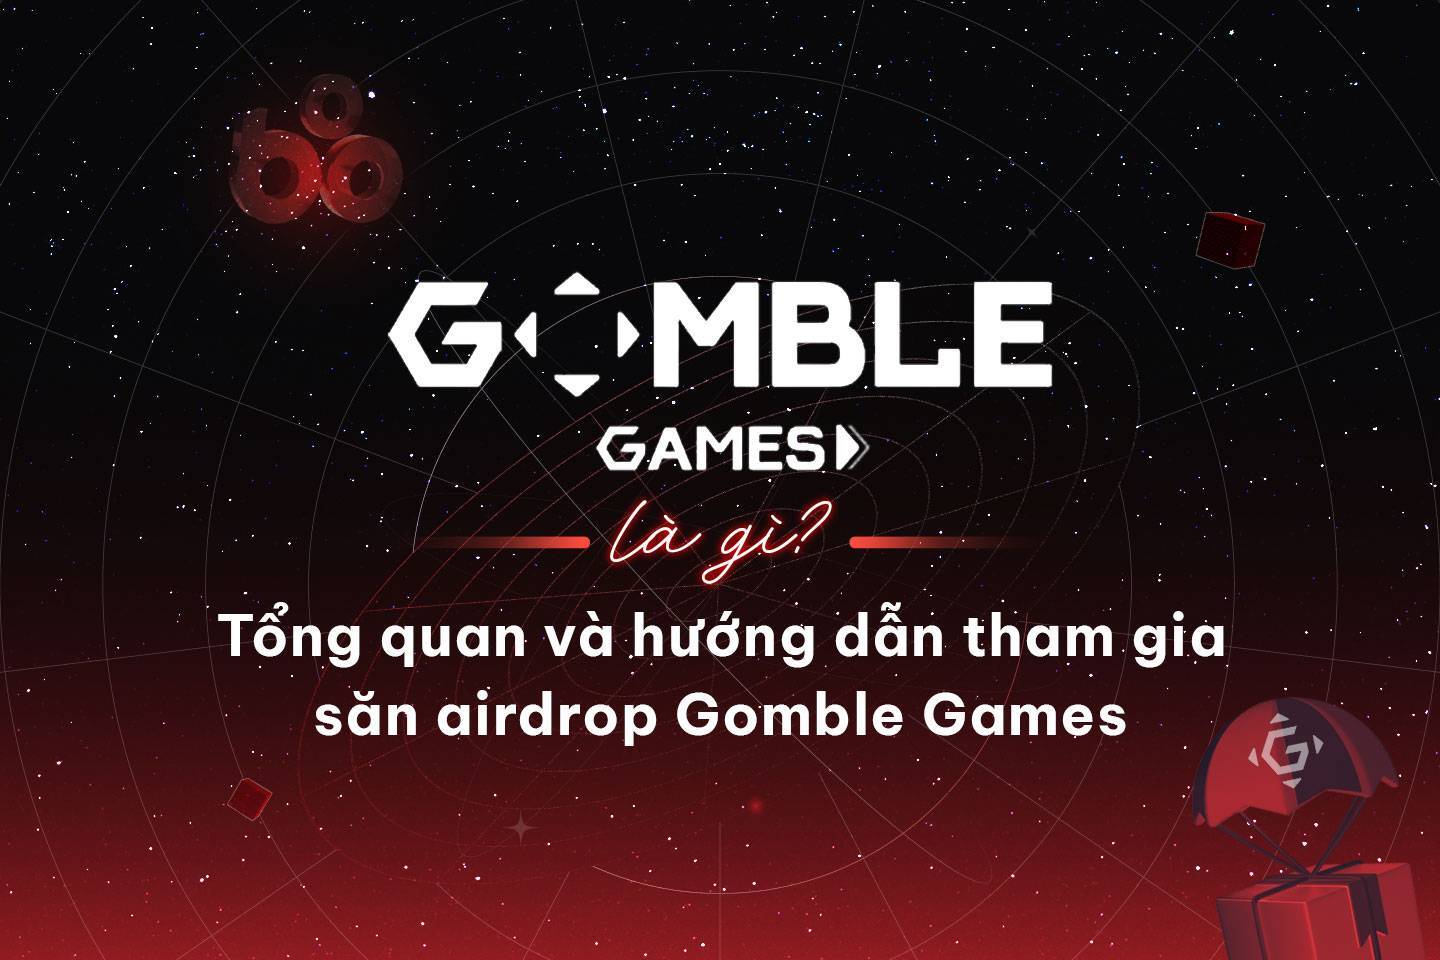 Gomble Games Là Gì Tổng Quan Và Hướng Dẫn Tham Gia Săn Airdrop Gomble Games